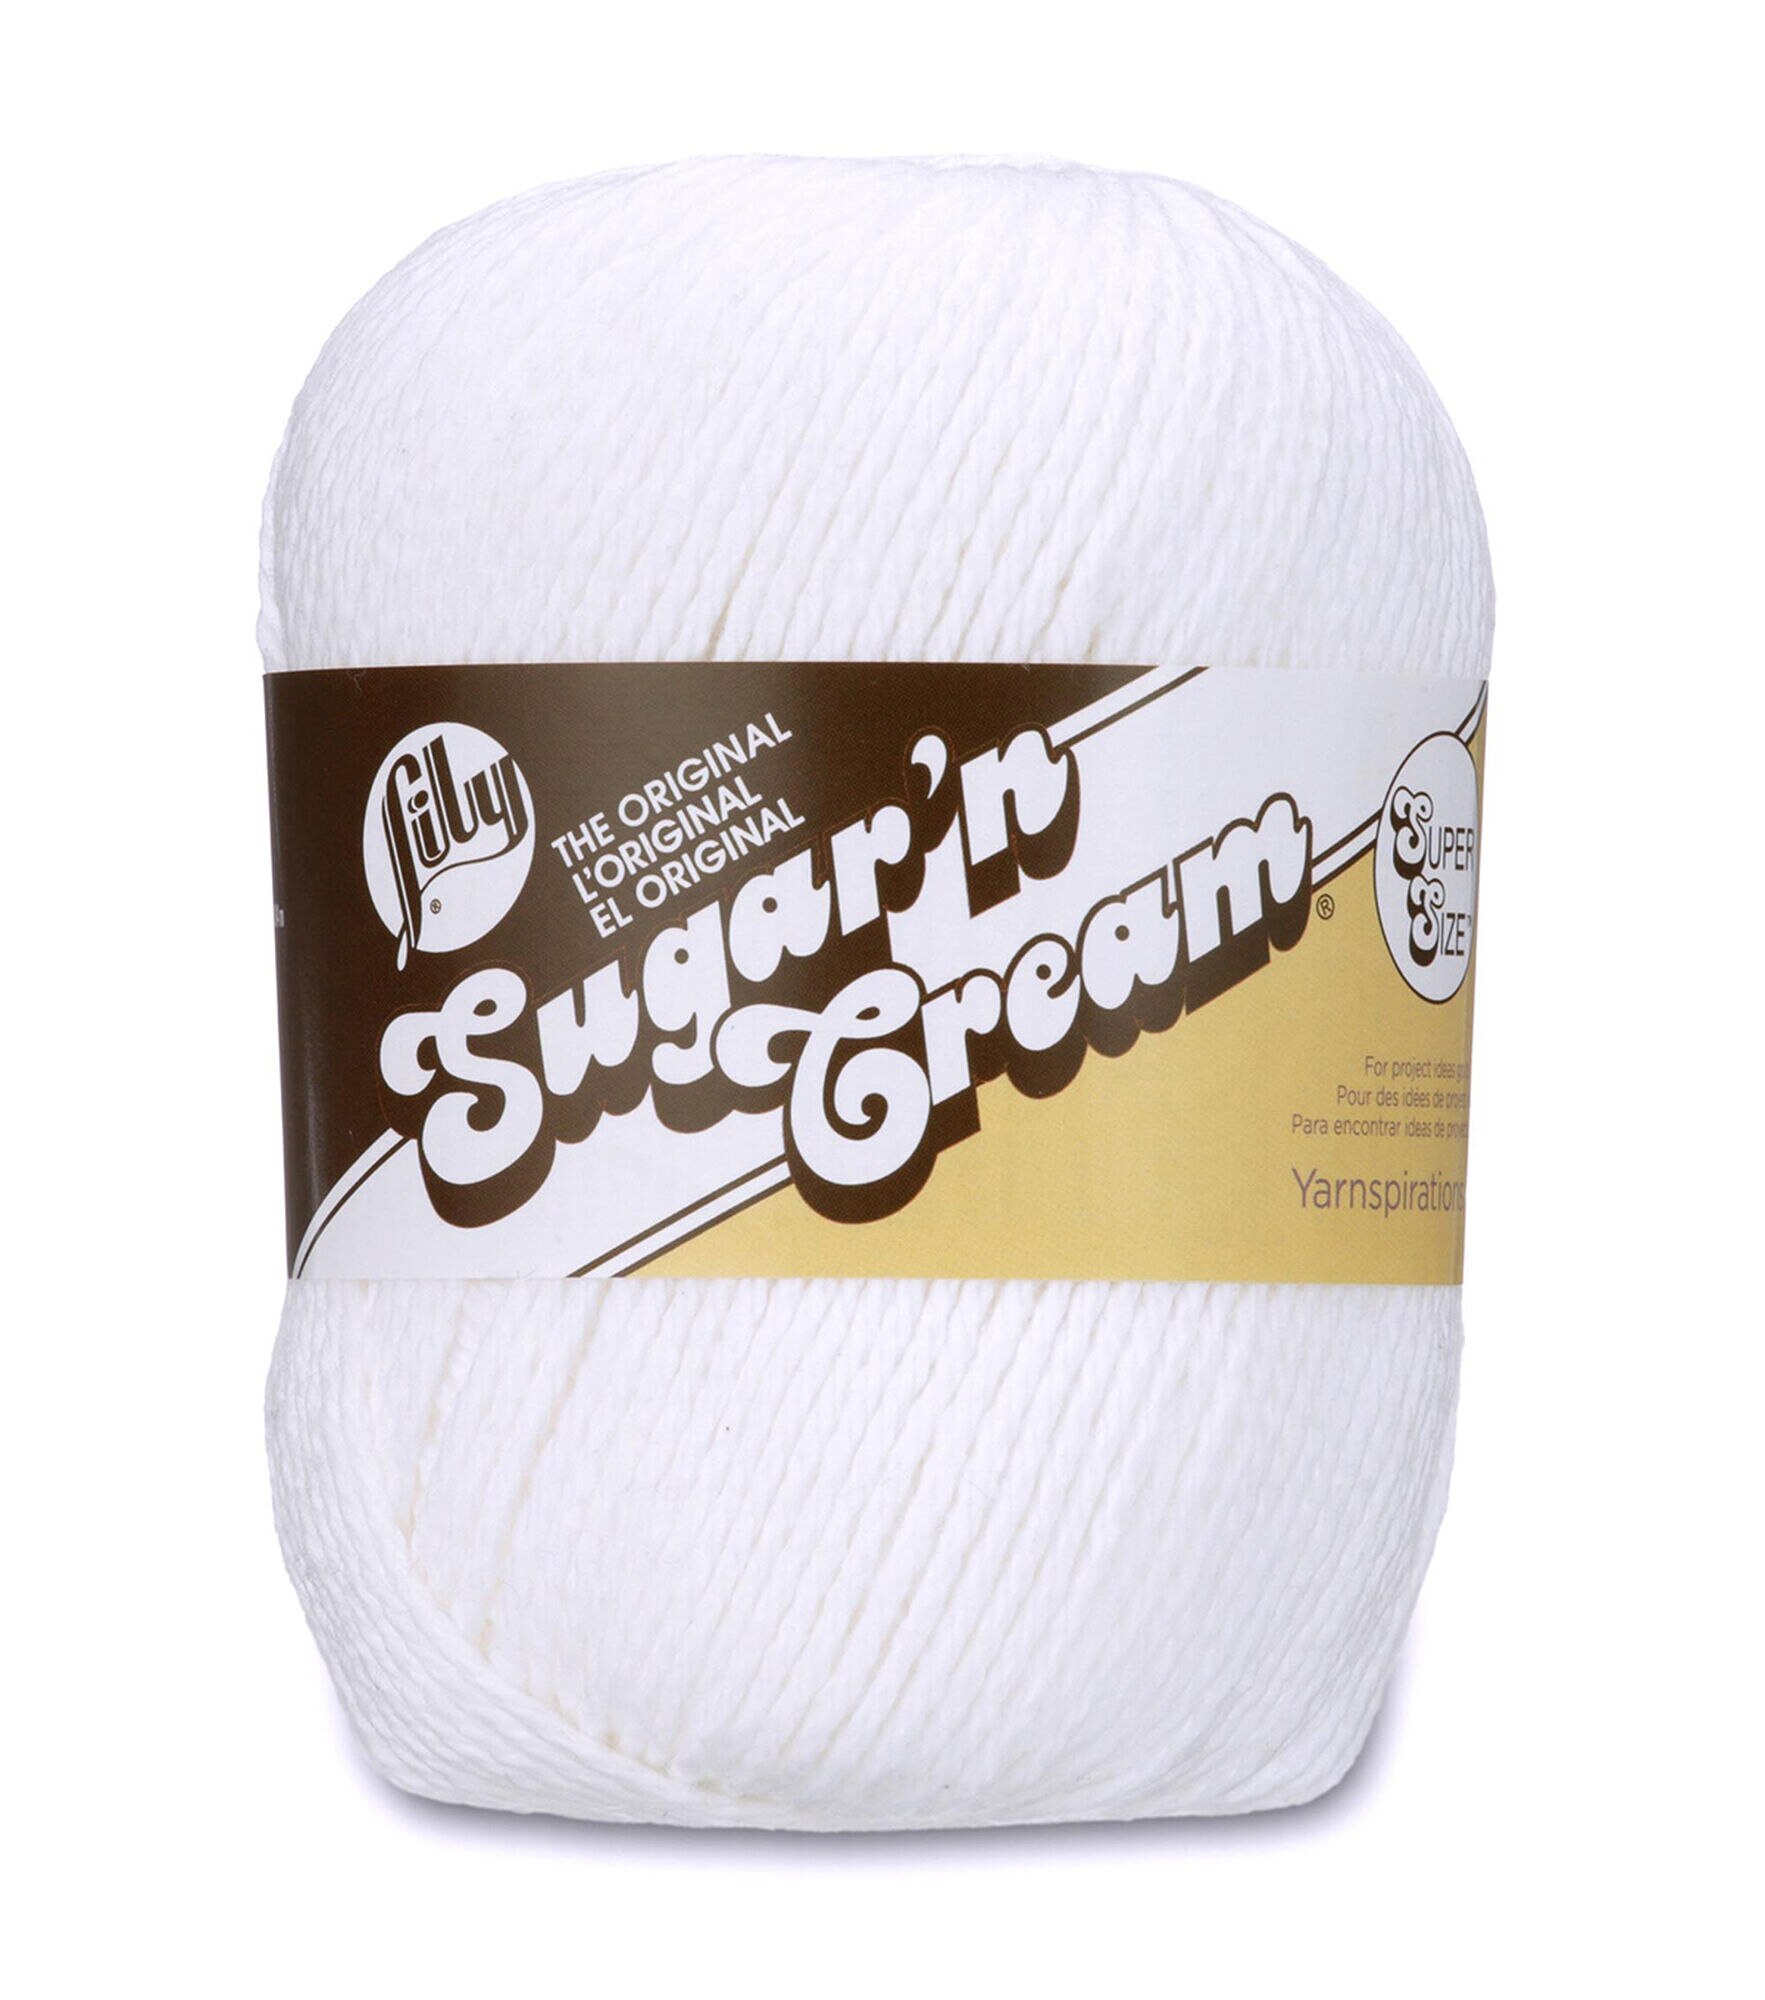 Lily Sugar’n Cream Scrub Off Clearance Yarn by Lily Sugar’n Cream | Joann x  Ribblr